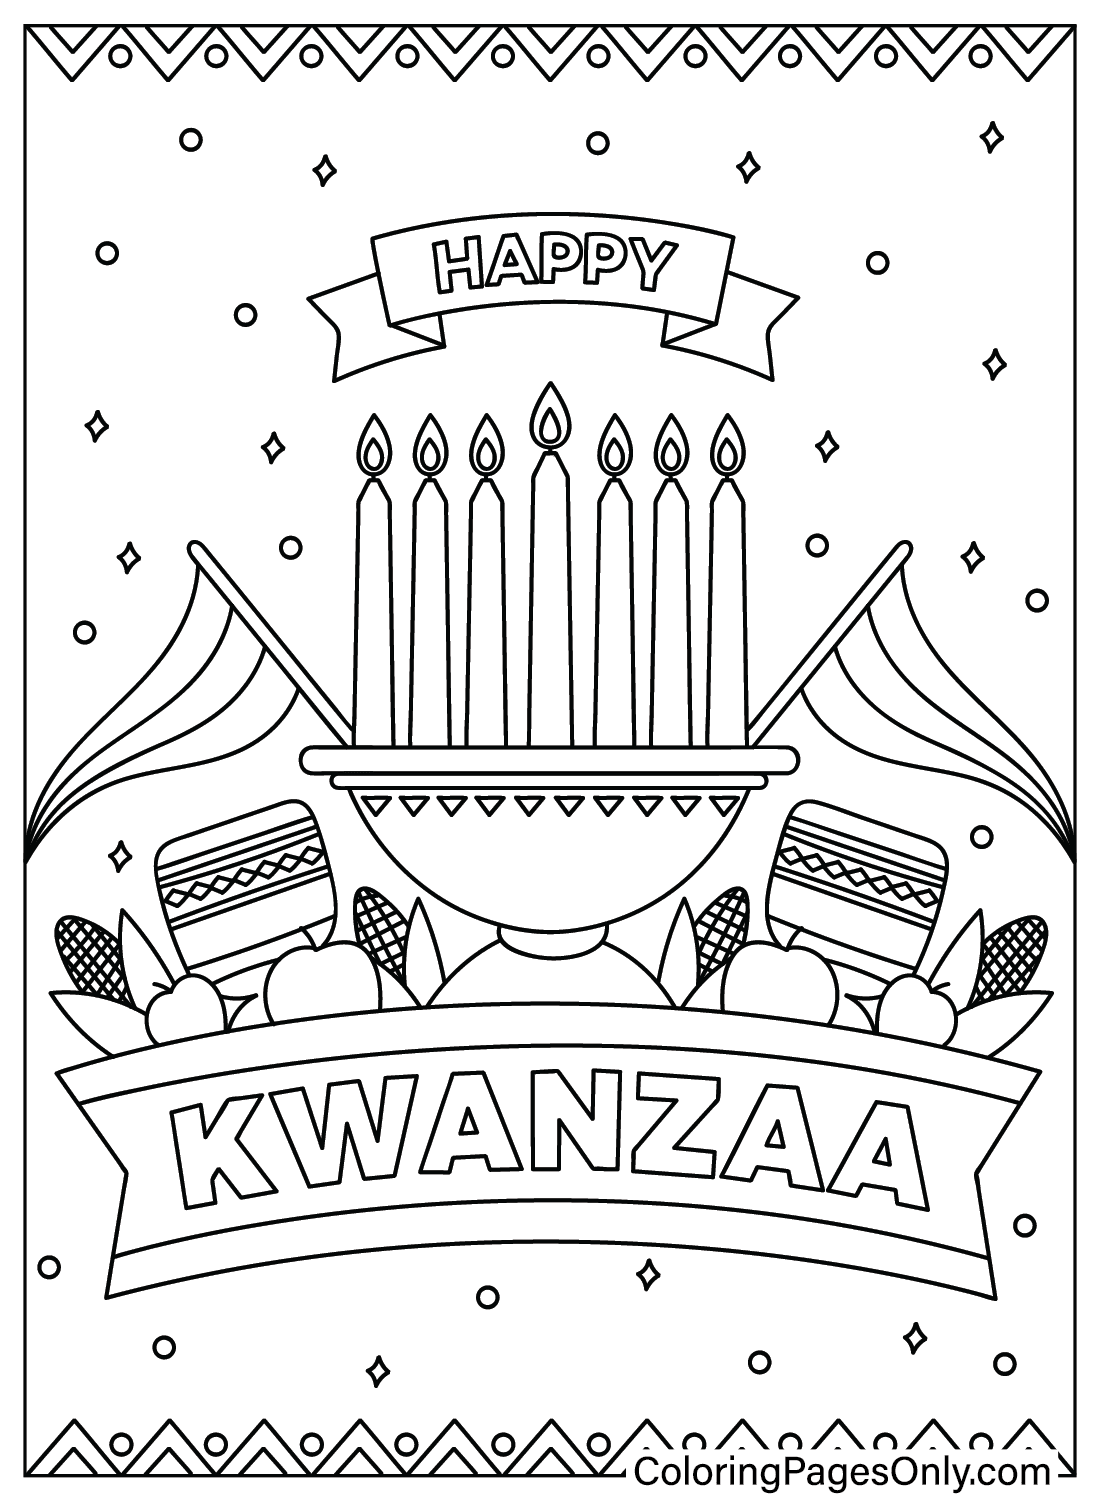 Kwanzaa zu Farbe von Kwanzaa